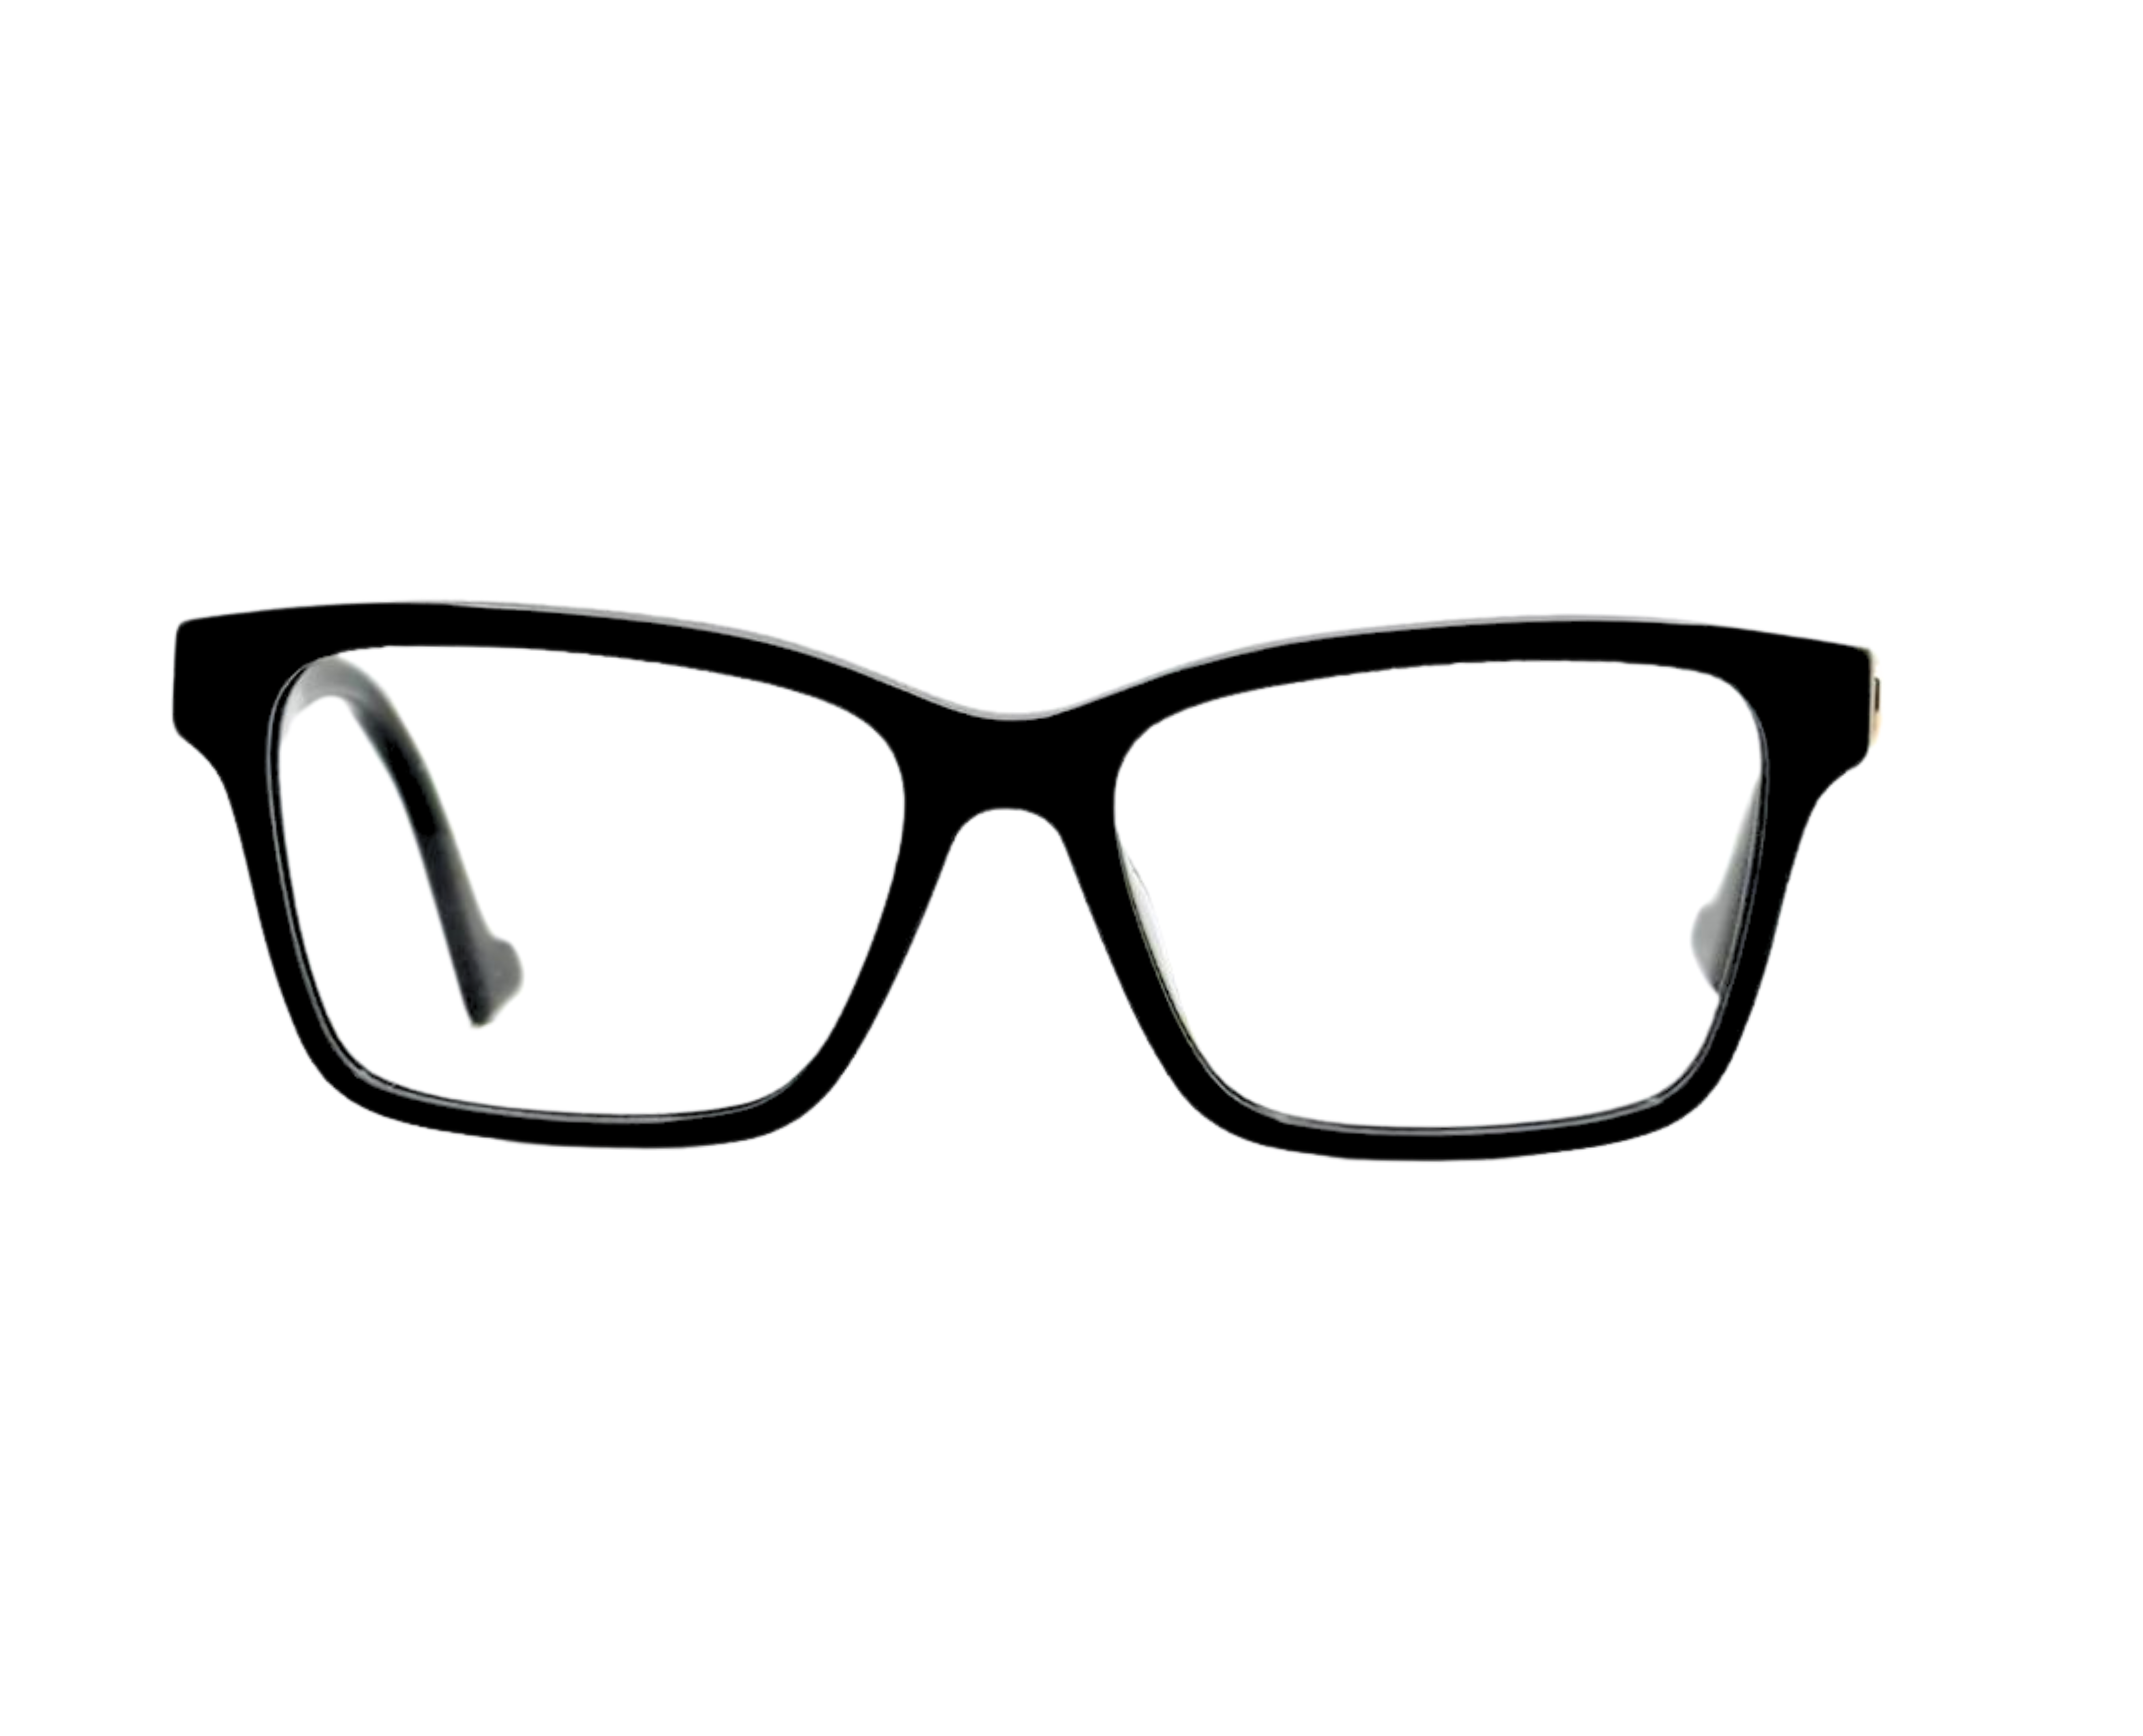 NS Luxury - J04 - Black - Eyeglasses 